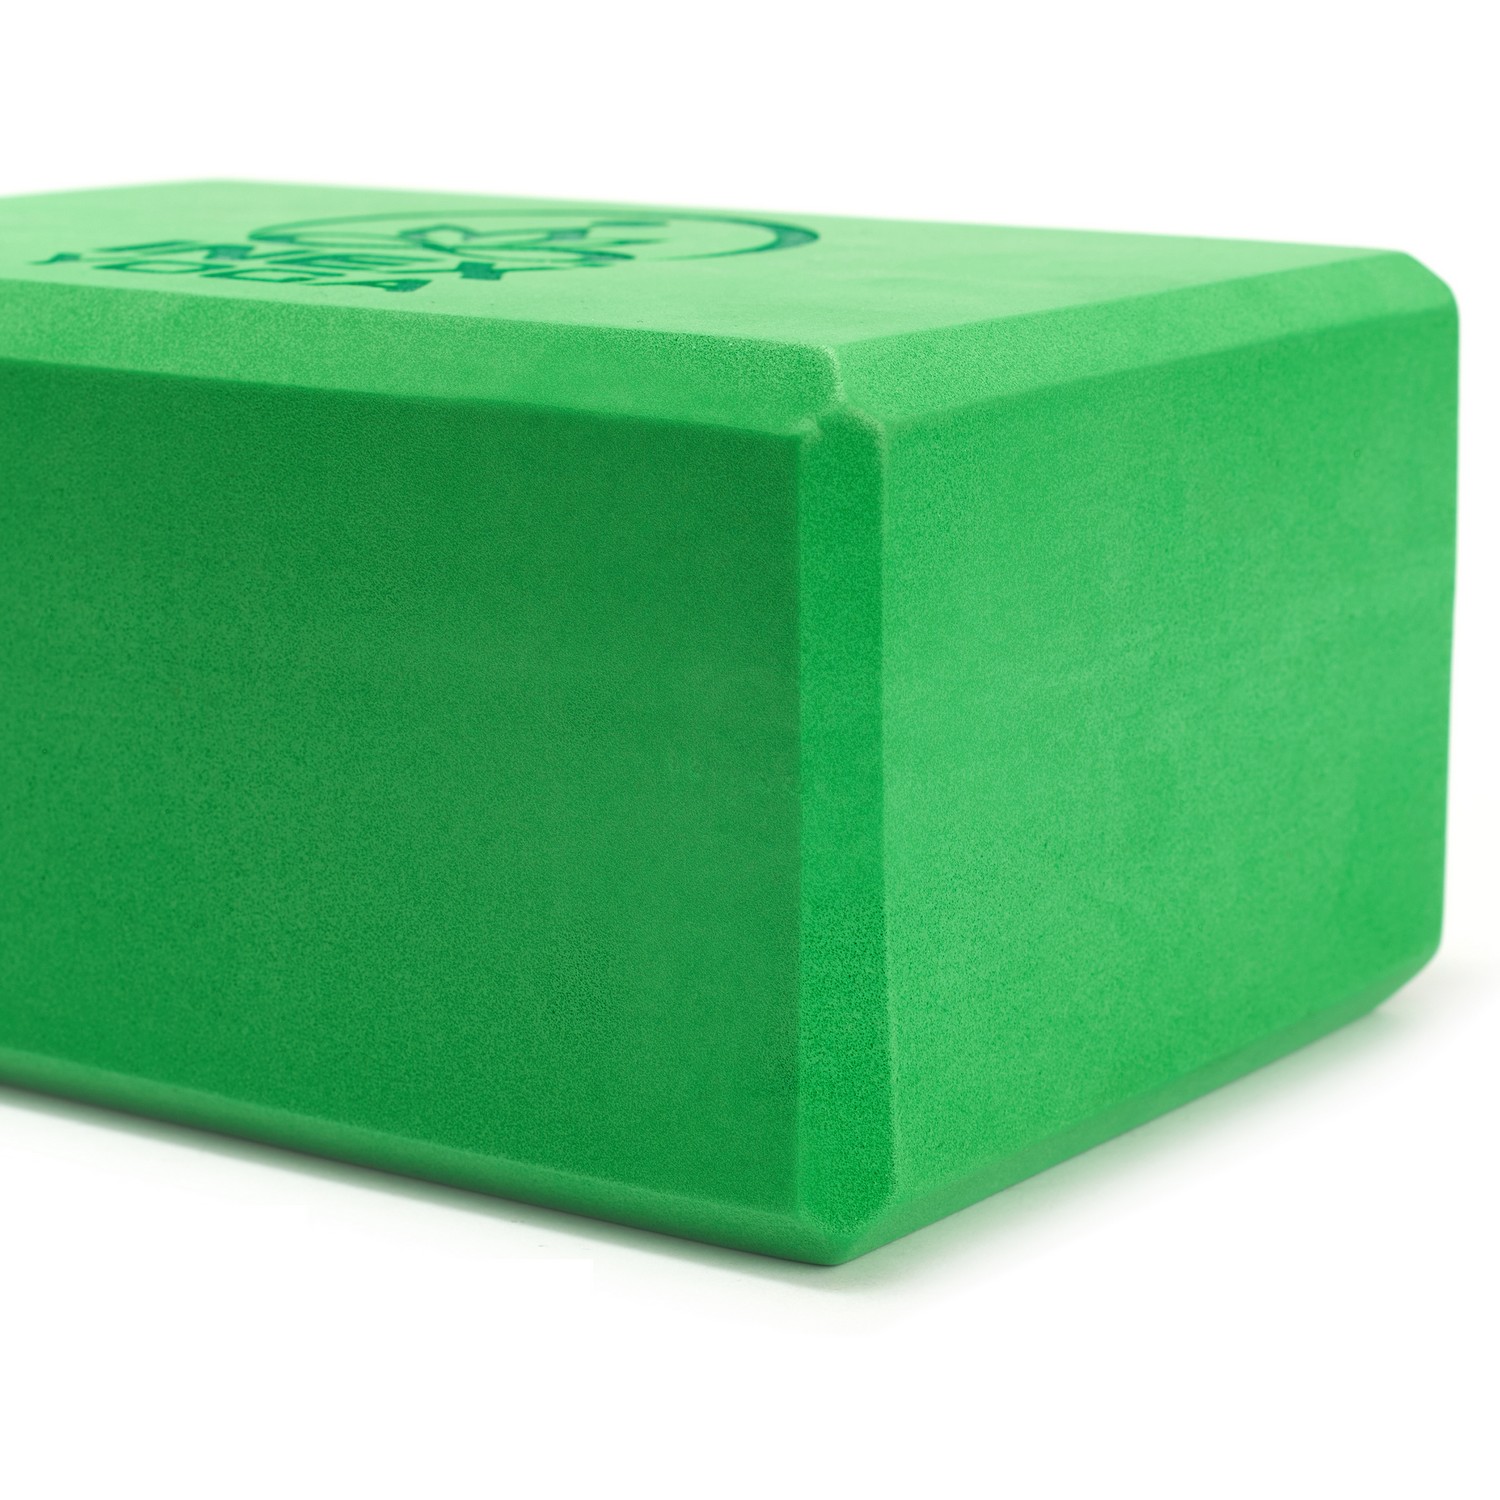 Блок для йоги Intex EVA Yoga Block YGBK-GG 23x15x10 см, зеленый 1500_1500